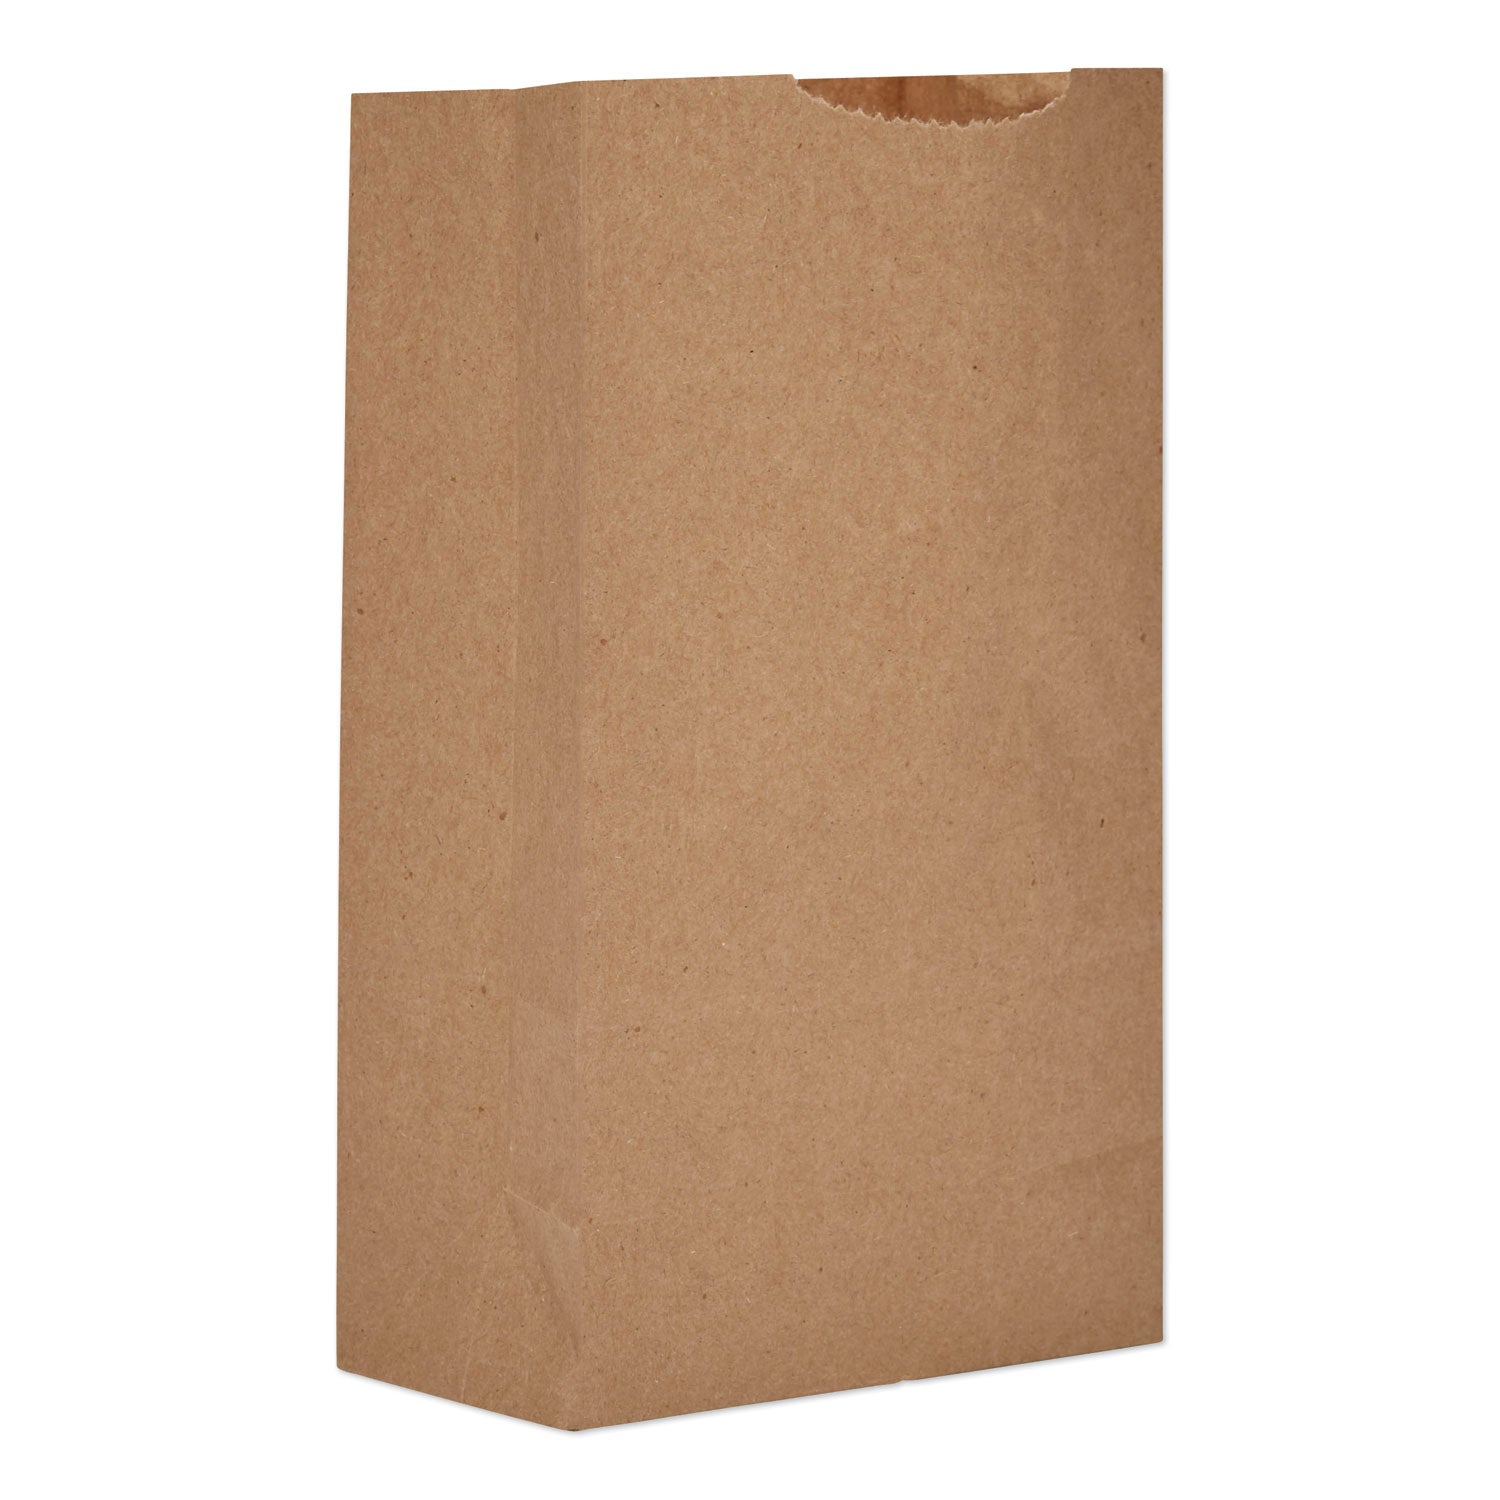 grocery-paper-bags-30-lb-capacity-#3-475-x-294-x-856-kraft-500-bags_baggk3500 - 1